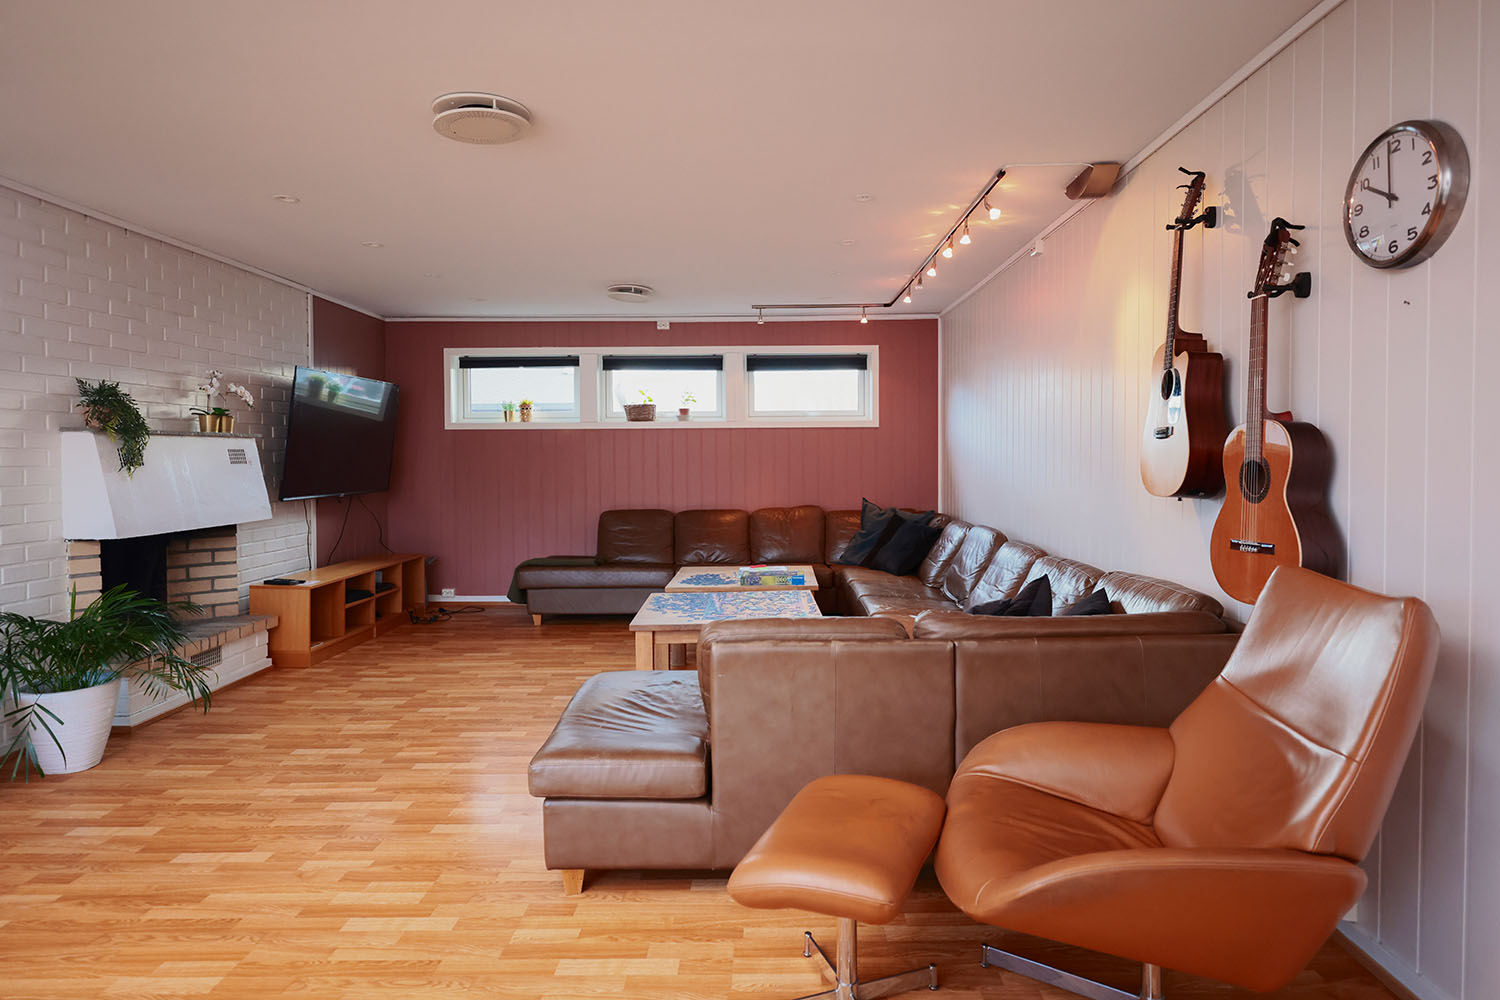 Stue med hjørnesofa, lenestol, tv, peis og gitarer på veggen. Foto.